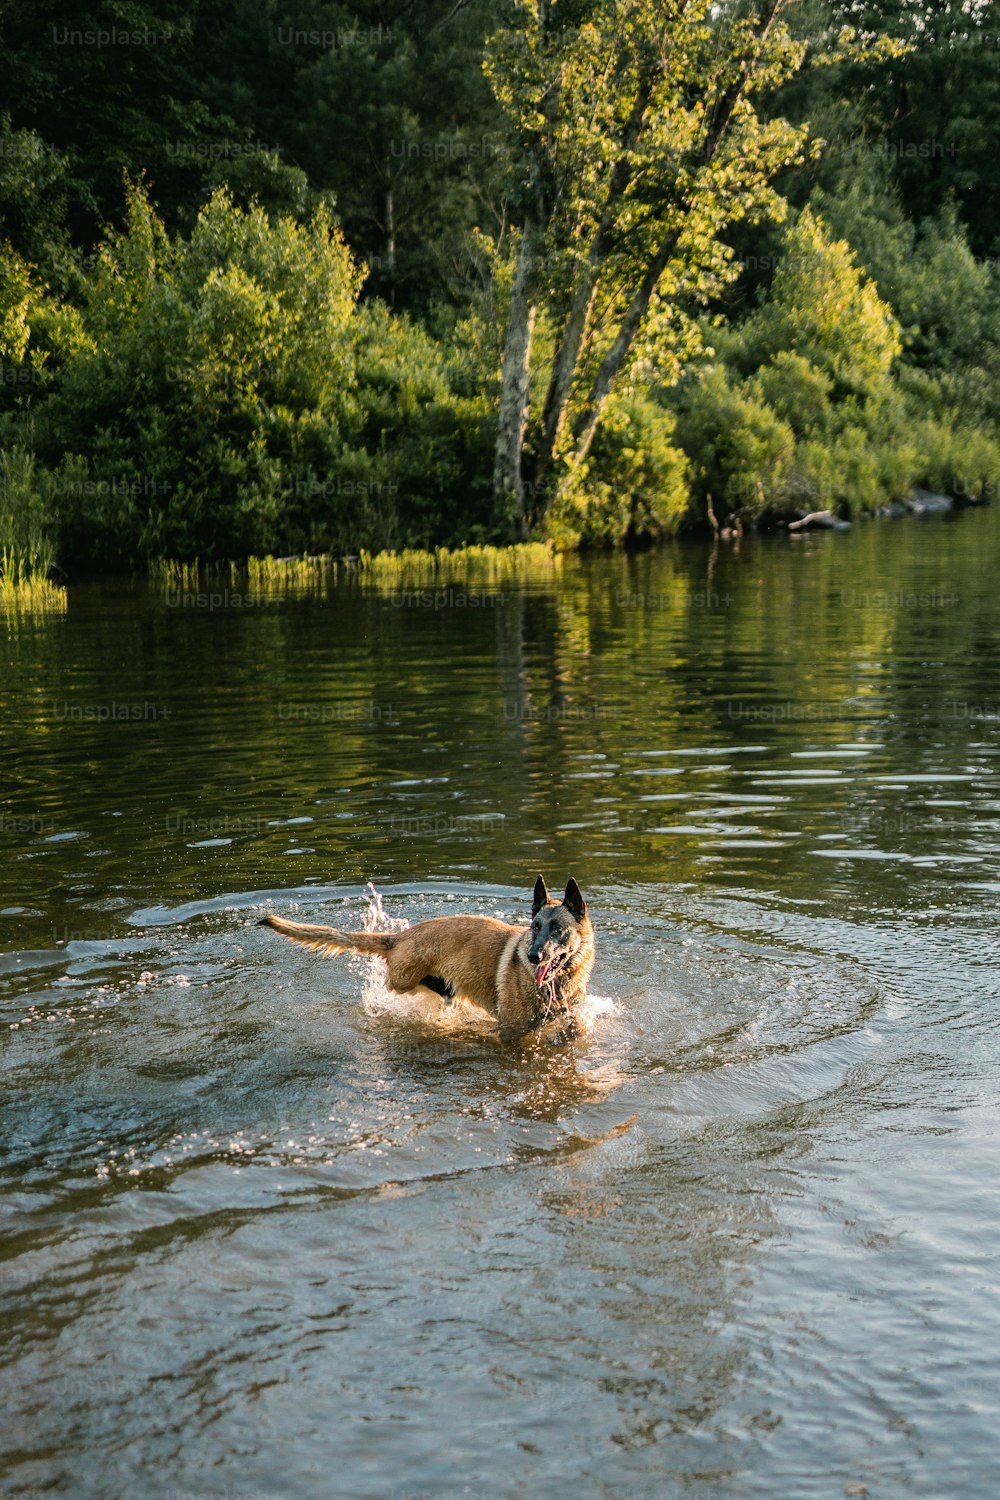 Un perro está nadando en un lago con árboles en el fondo